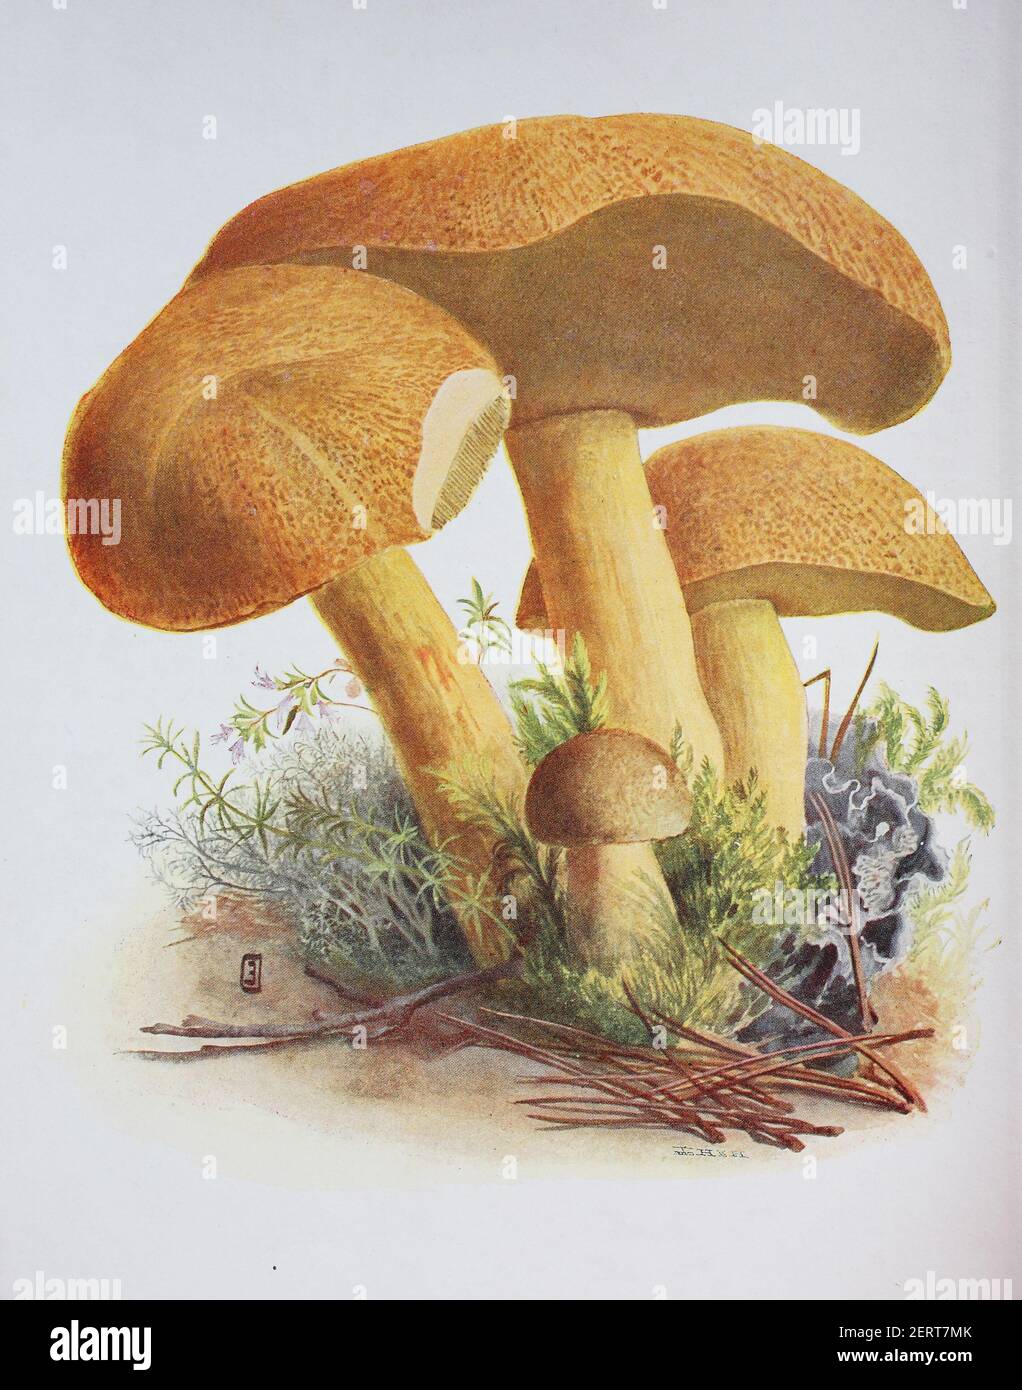 Il Suillus variegatus, comunemente chiamato bolete di velluto o bolete variegato, è una specie di fungo commestibile del genere Suillus, riproduzione digitale di un'immagine di Emil Doerstling (1859-1940) Foto Stock